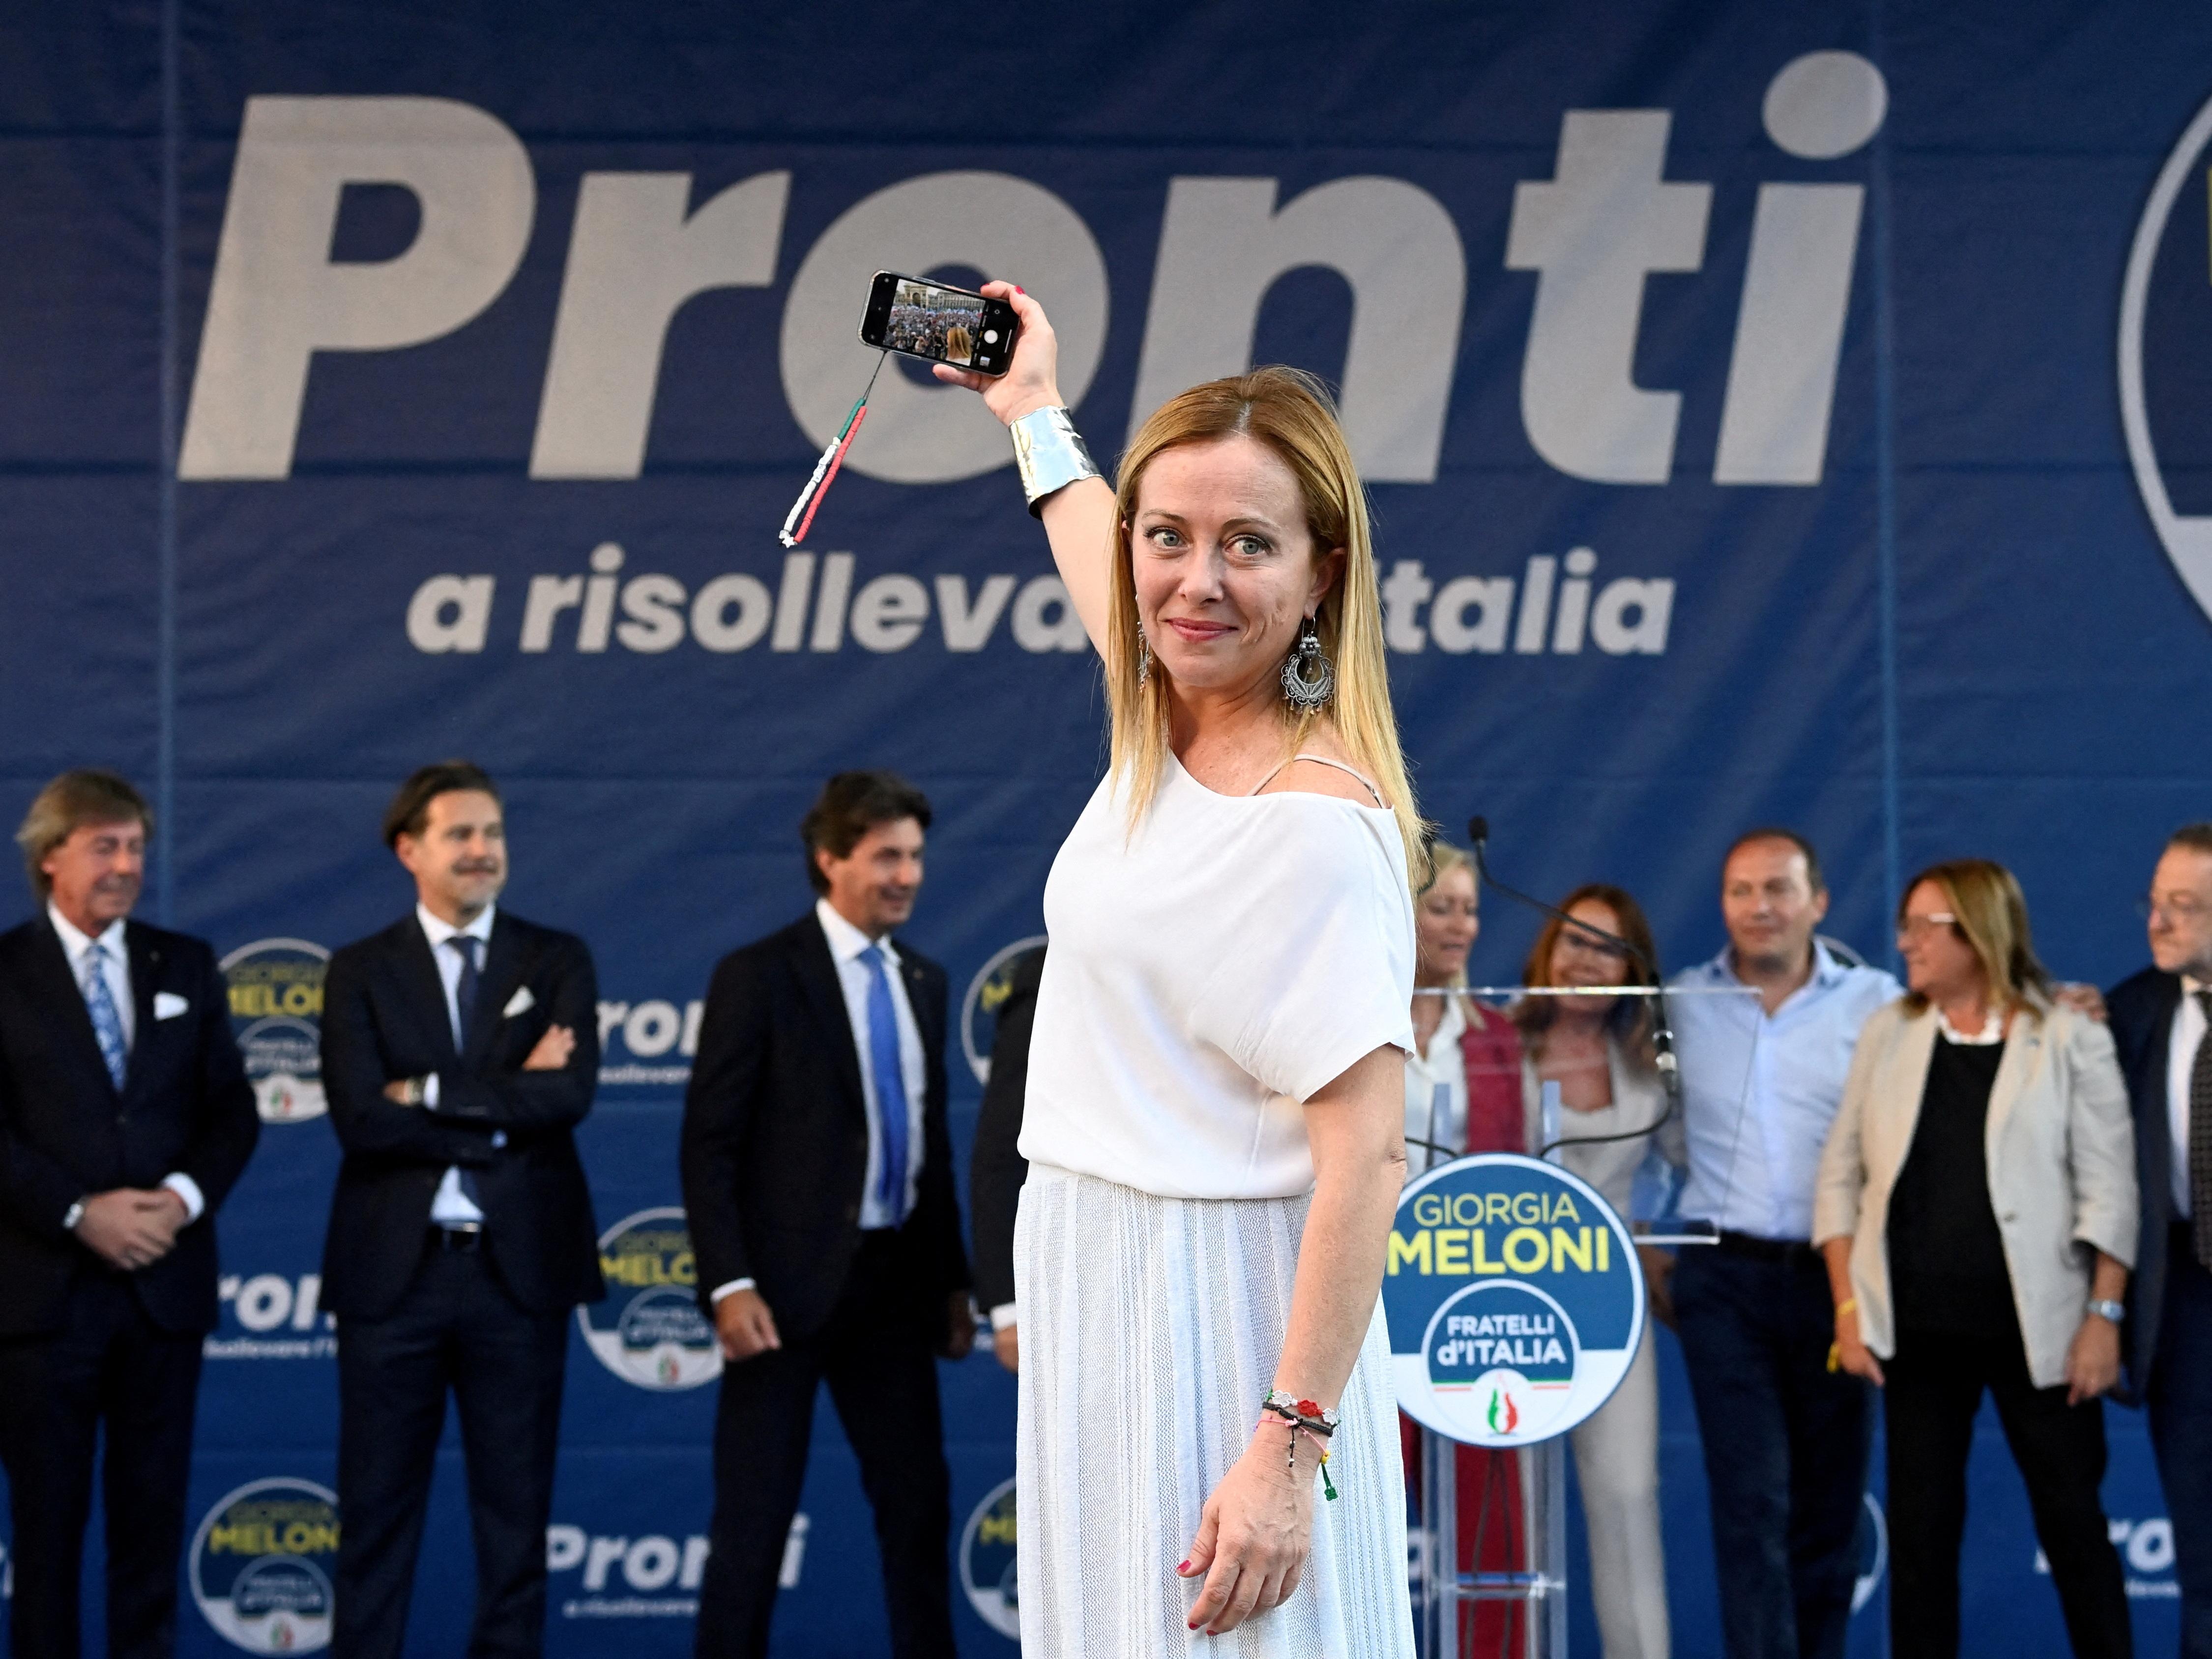 La coalizione di destra mette Giorgia Meloni al centro della scena per vincere le elezioni italiane